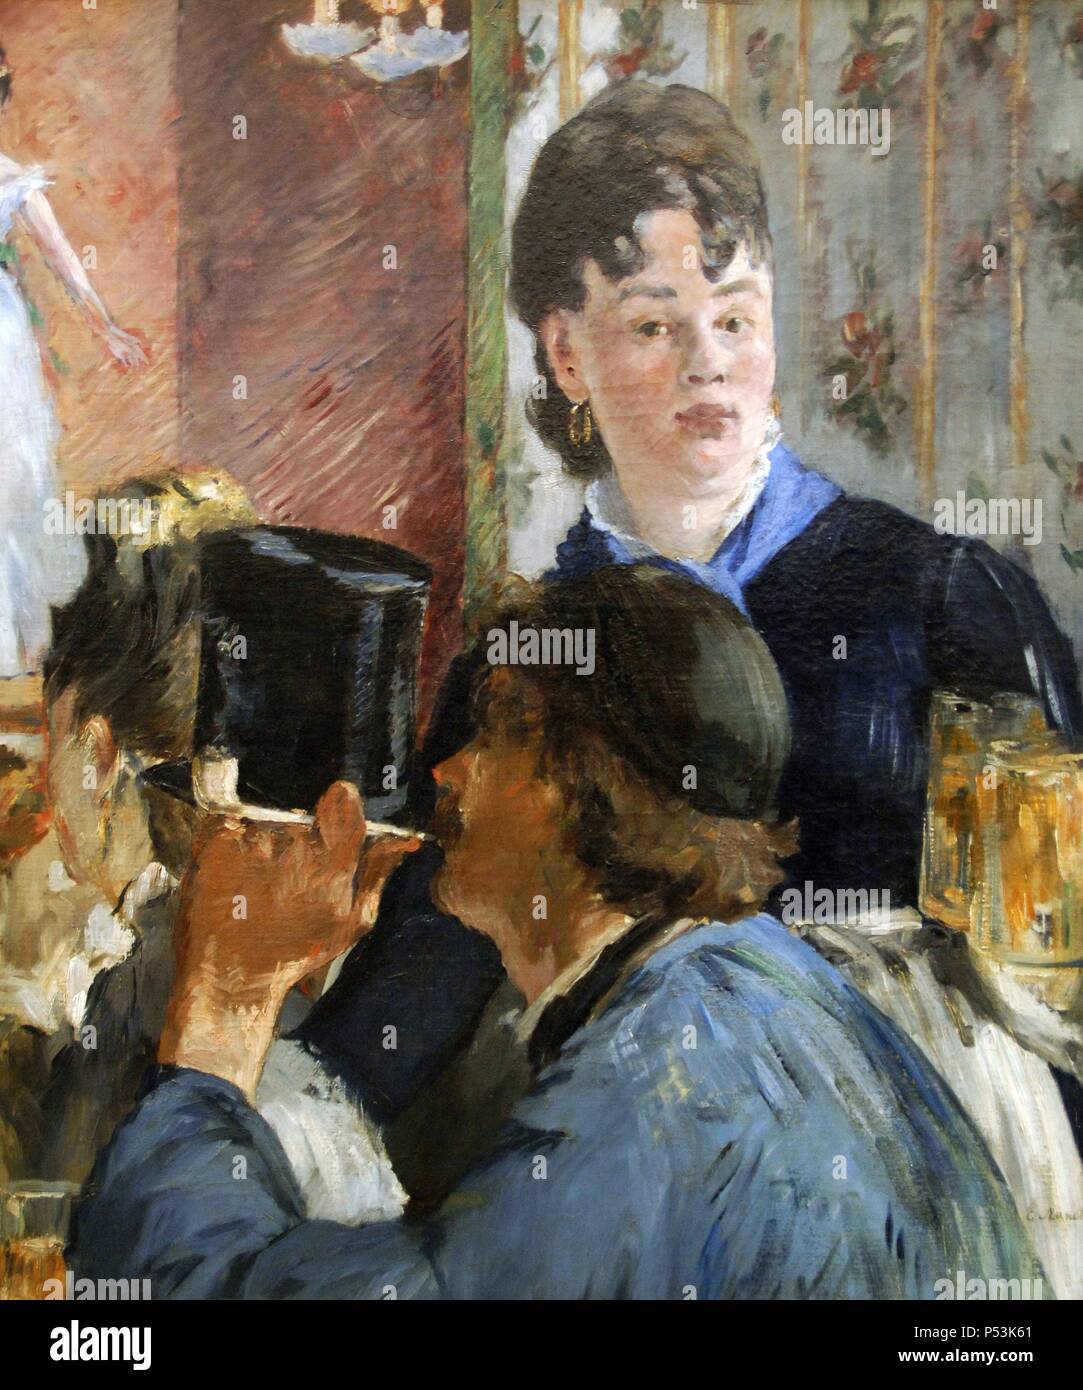 Edouard Manet (1832-1883). Le peintre français. La bonne bière, 1879. Huile sur toile. L'impressionnisme. Musée d'Orsay. Paris. La France. Banque D'Images